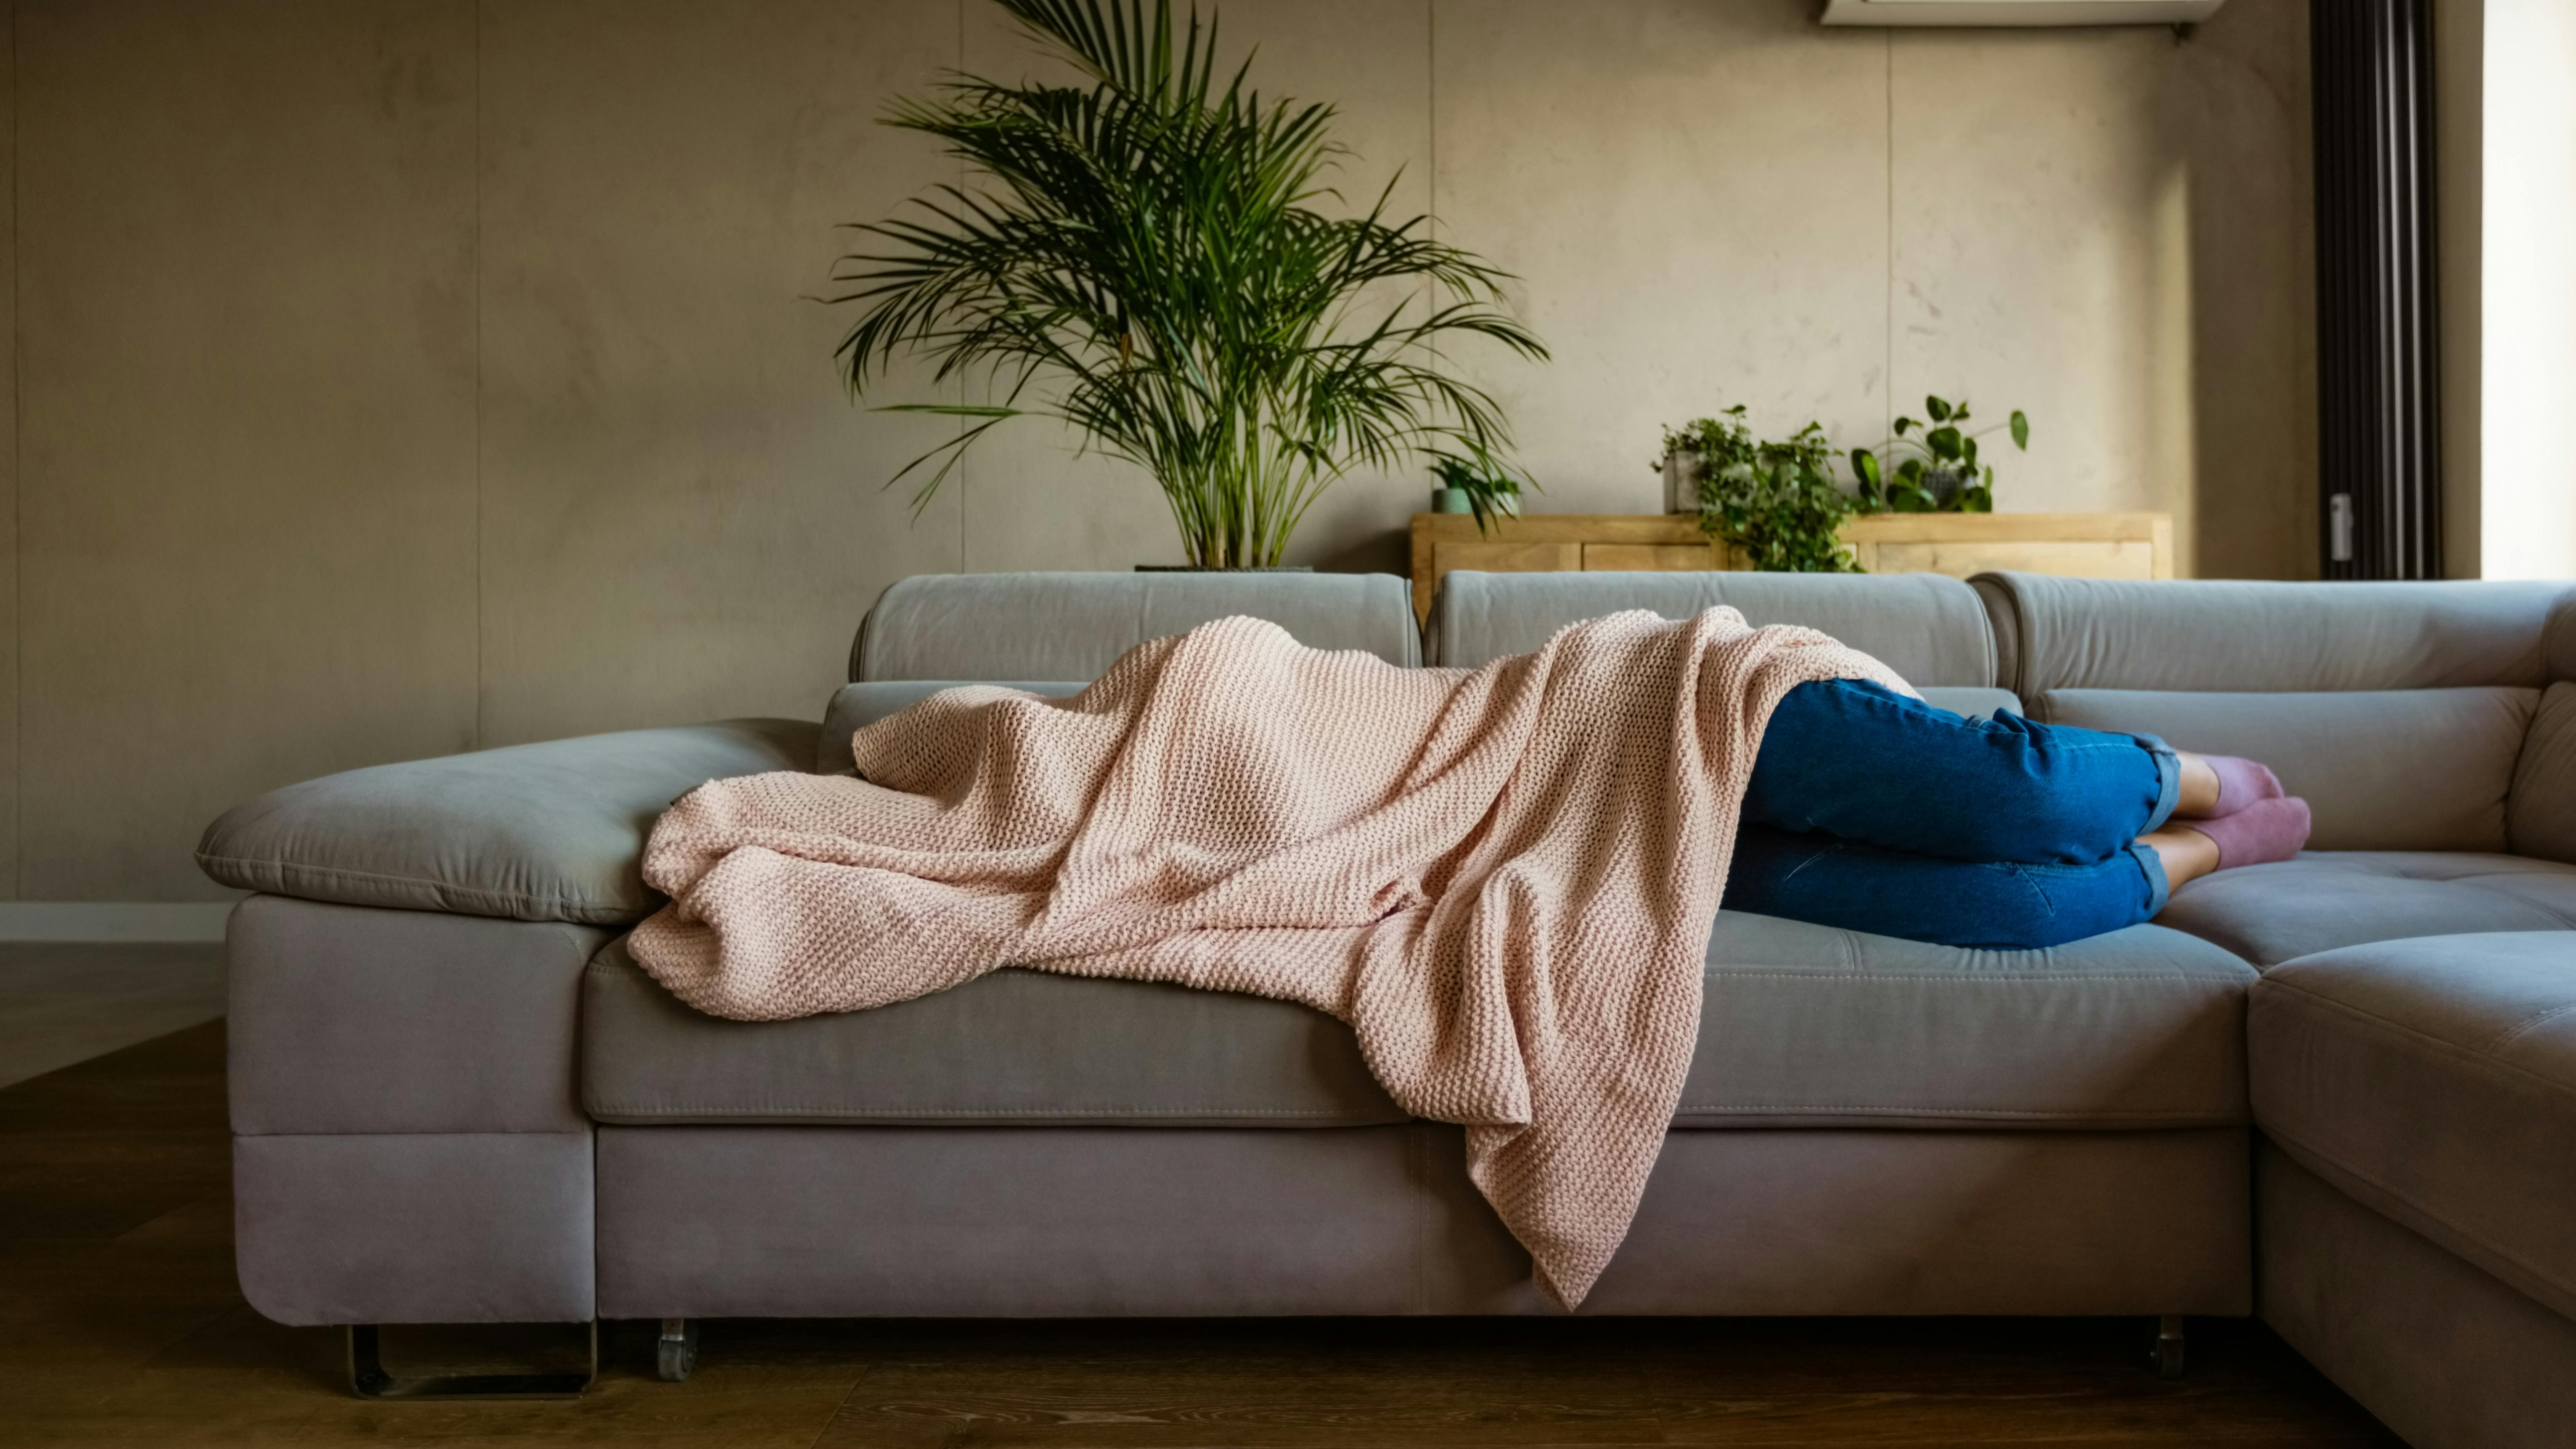 Eine Frau liegt auf dem Sofa und versteckt sich unter einer rosafarbenen Wolldecke.